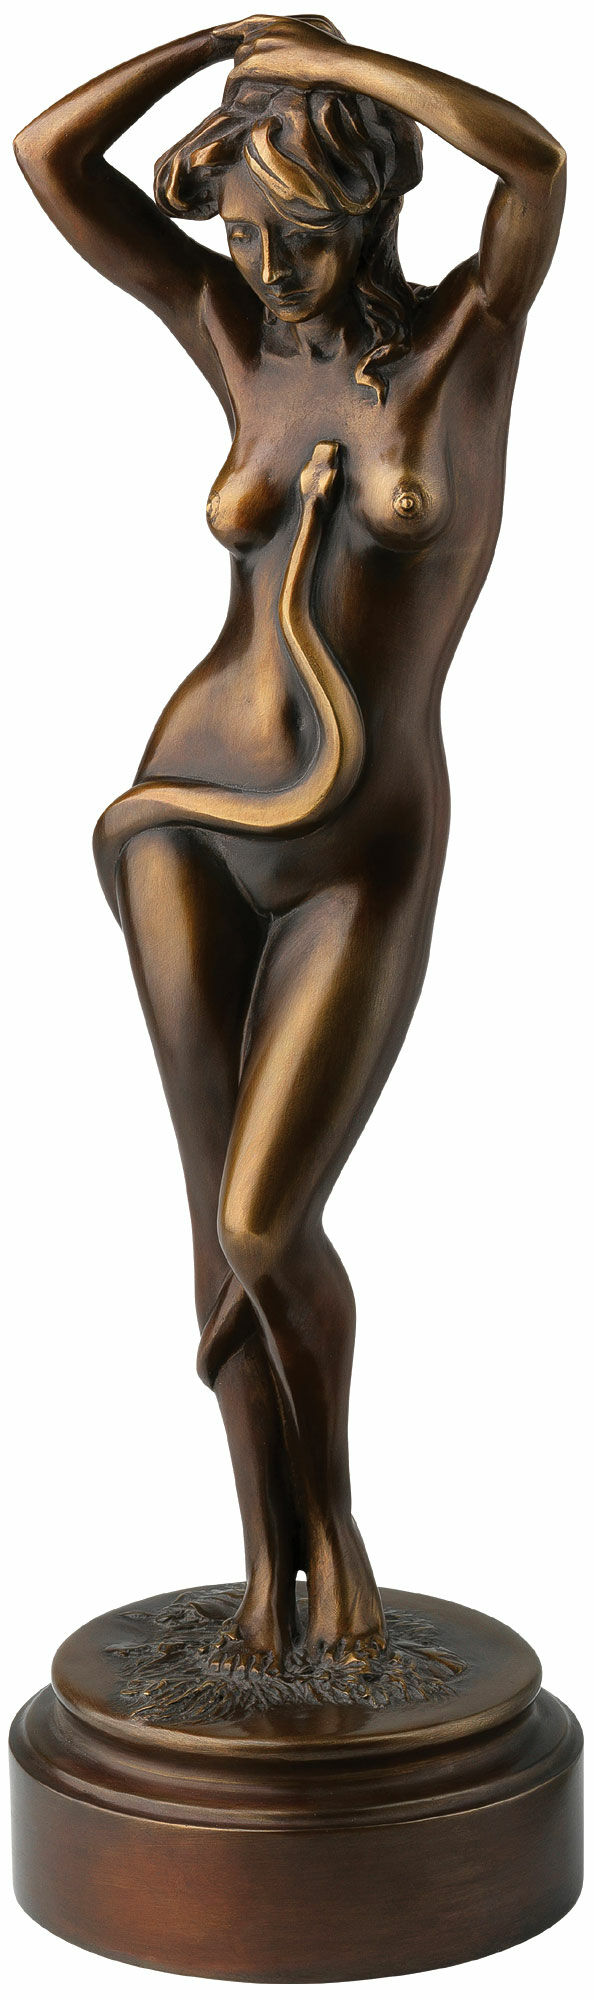 Sculpture "Eva", version bronze von Thomas Schöne